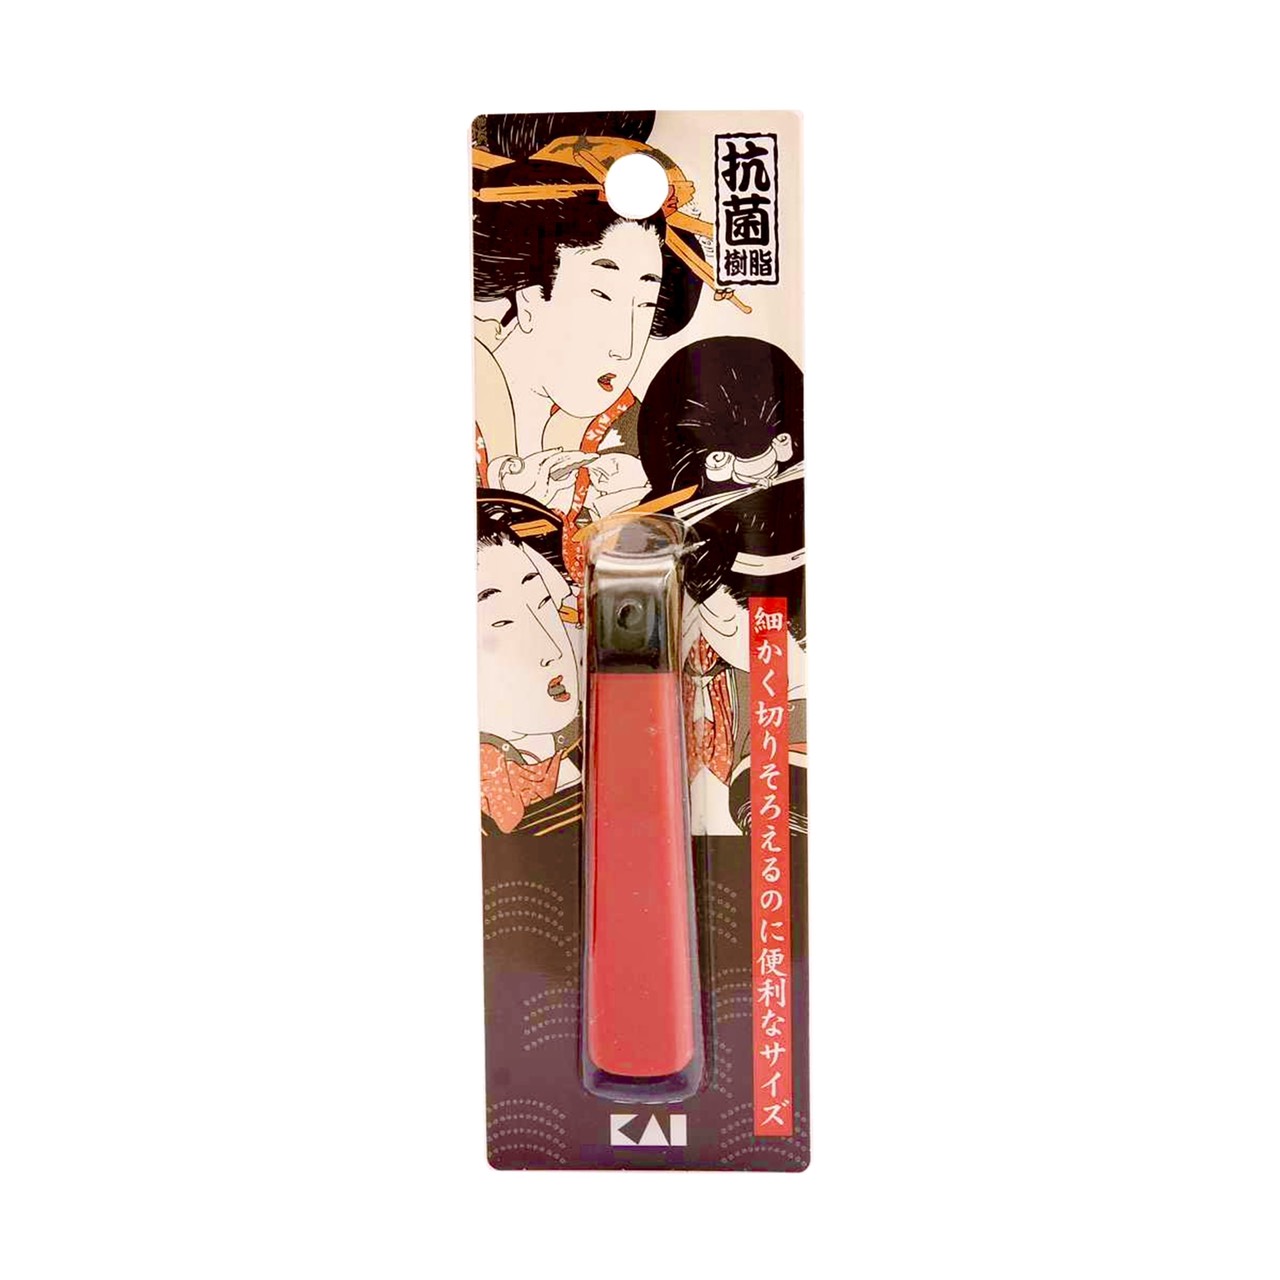 Bấm Móng Tay Inox Hình Geisha Razor Kai HC0467 Cỡ Đại (Màu Đỏ)